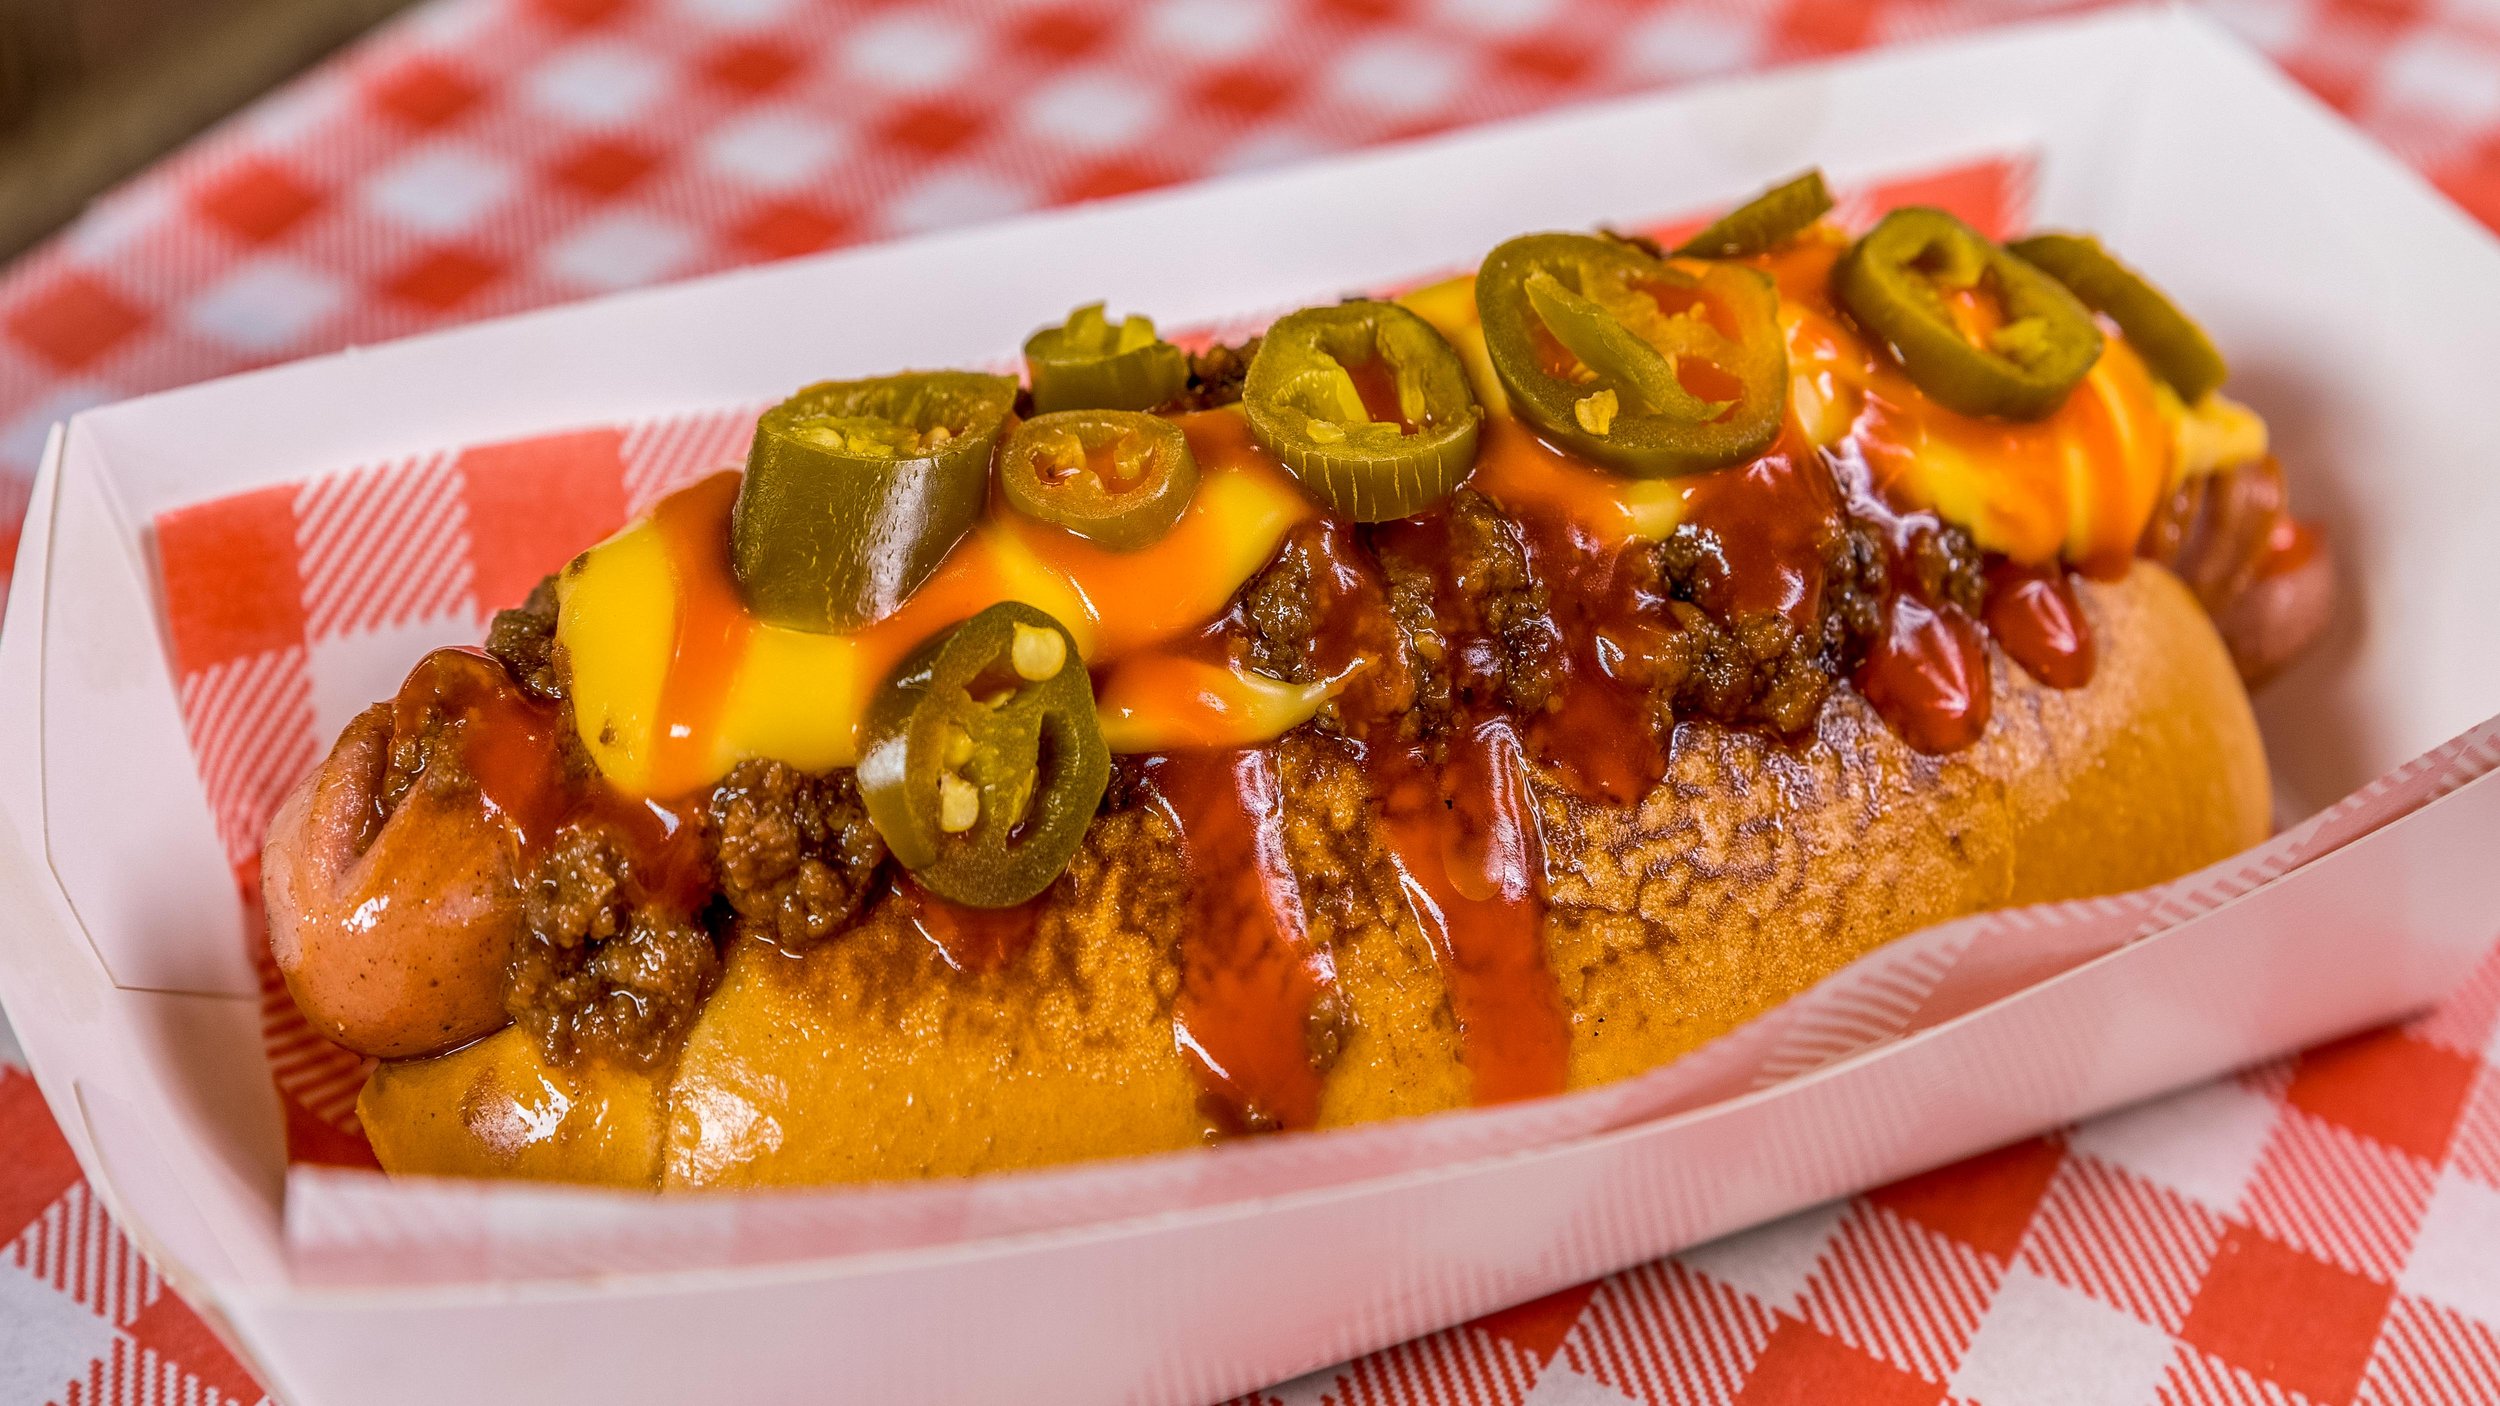 Batch Burgers & Espresso_mexican chilli hotdog_20210428.jpg